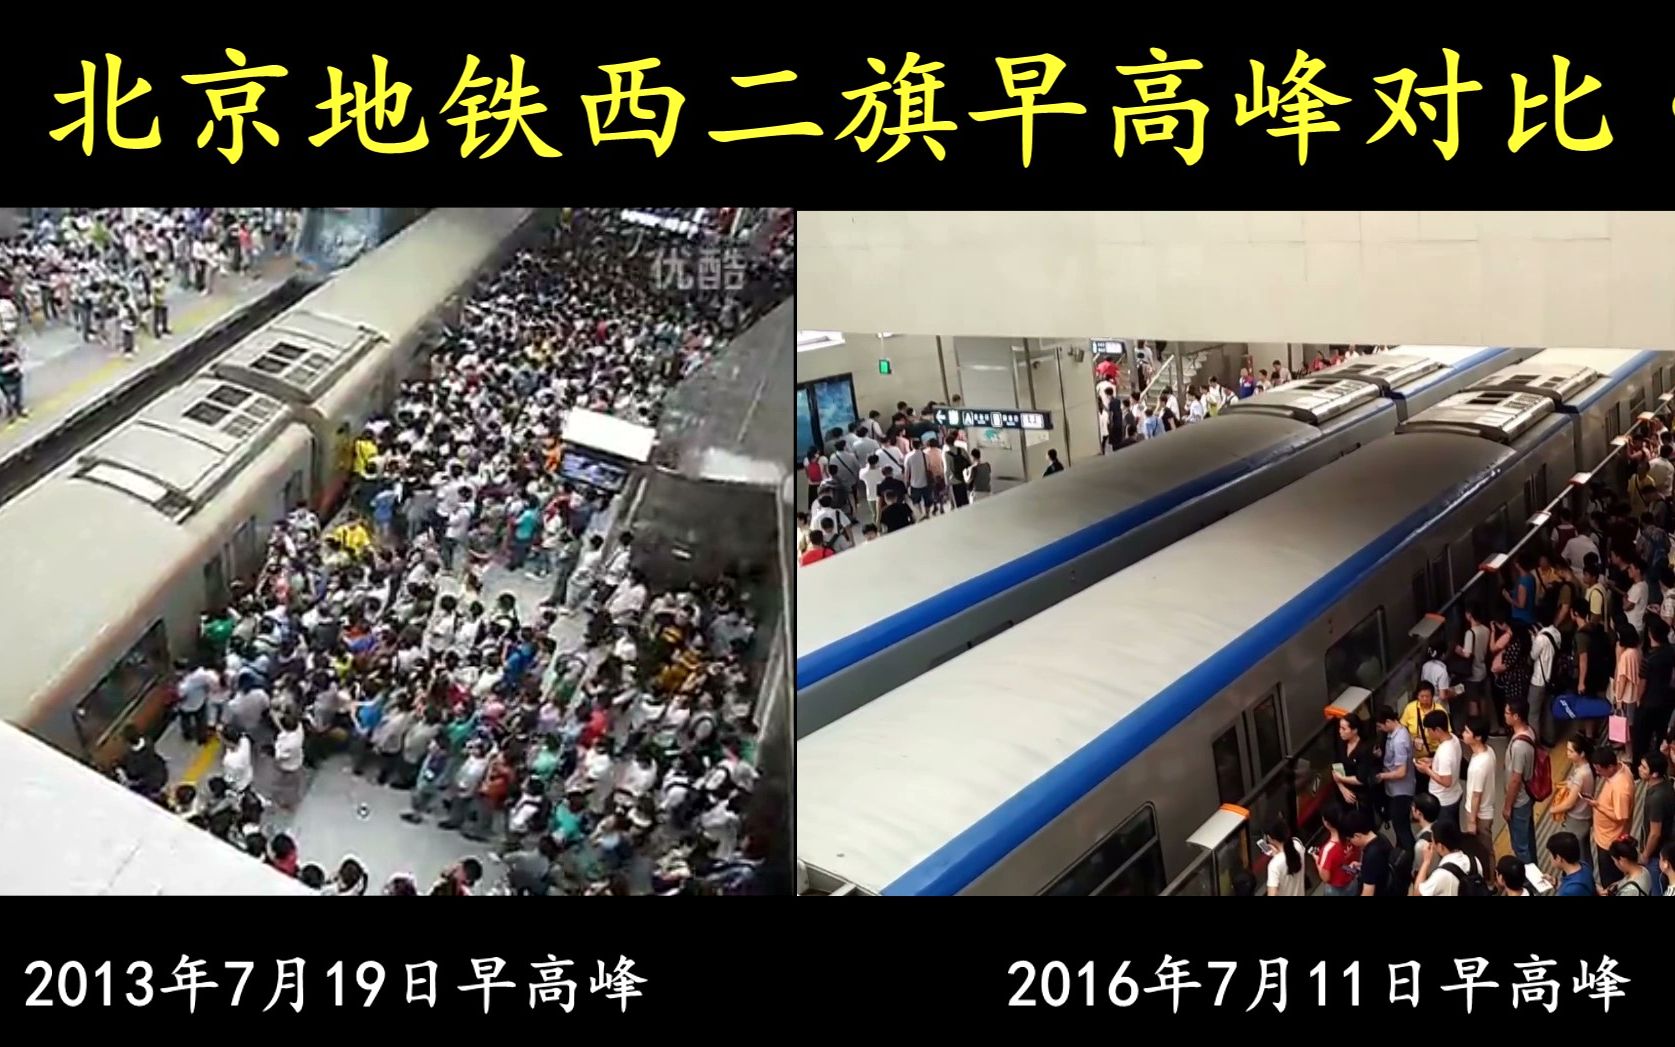 北京地铁---地狱西二旗高峰客流秩序对比